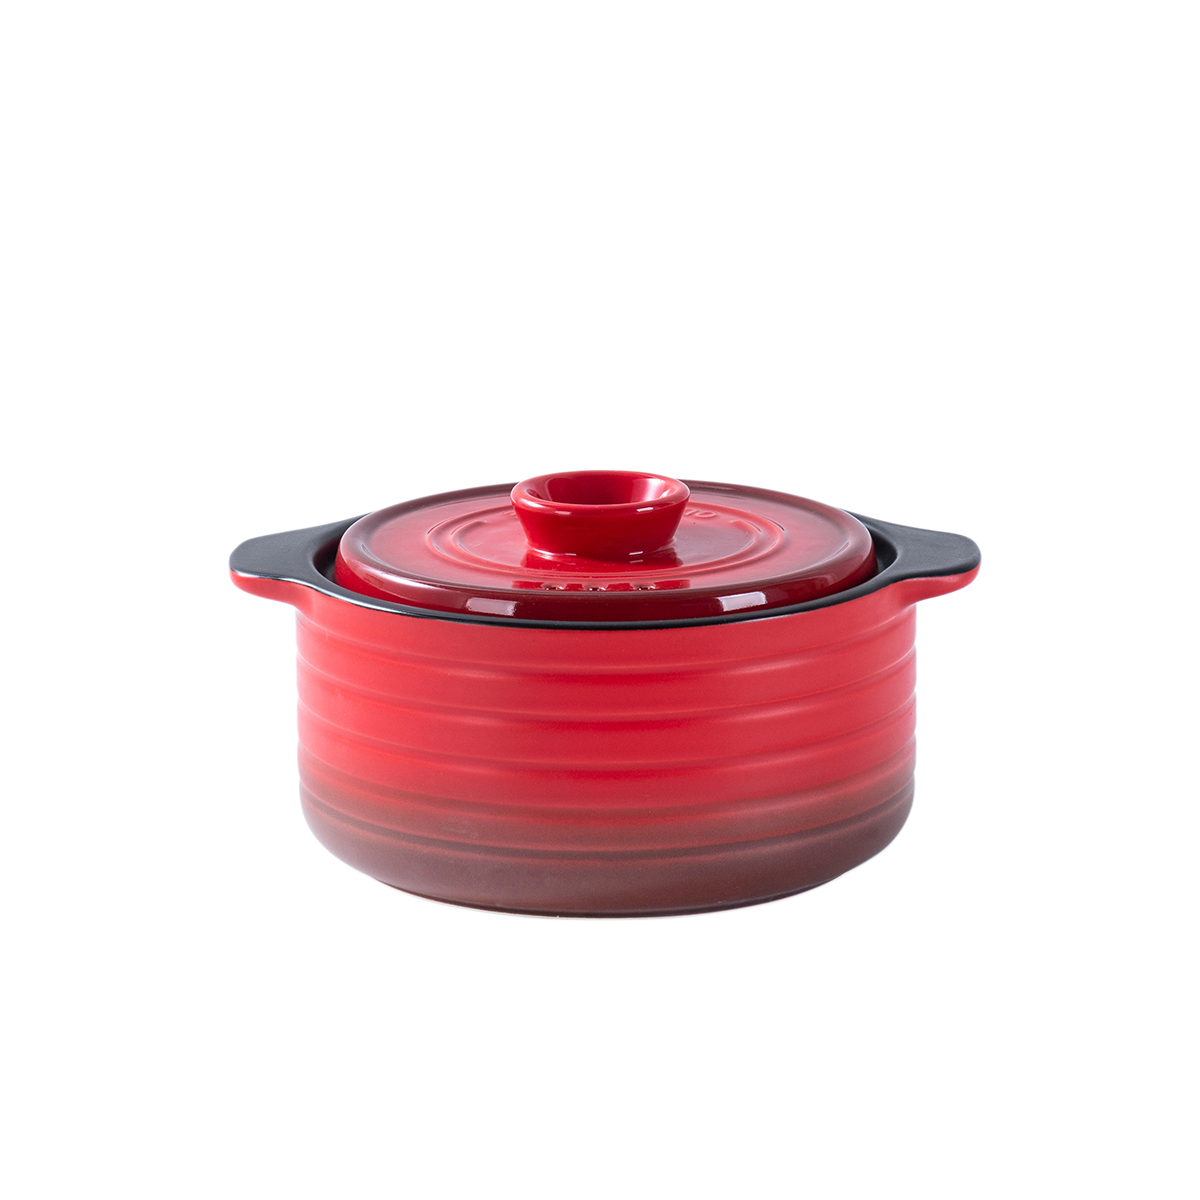 Ceramic Red Direct Fire 1 Liter Casserole - Che Brucia